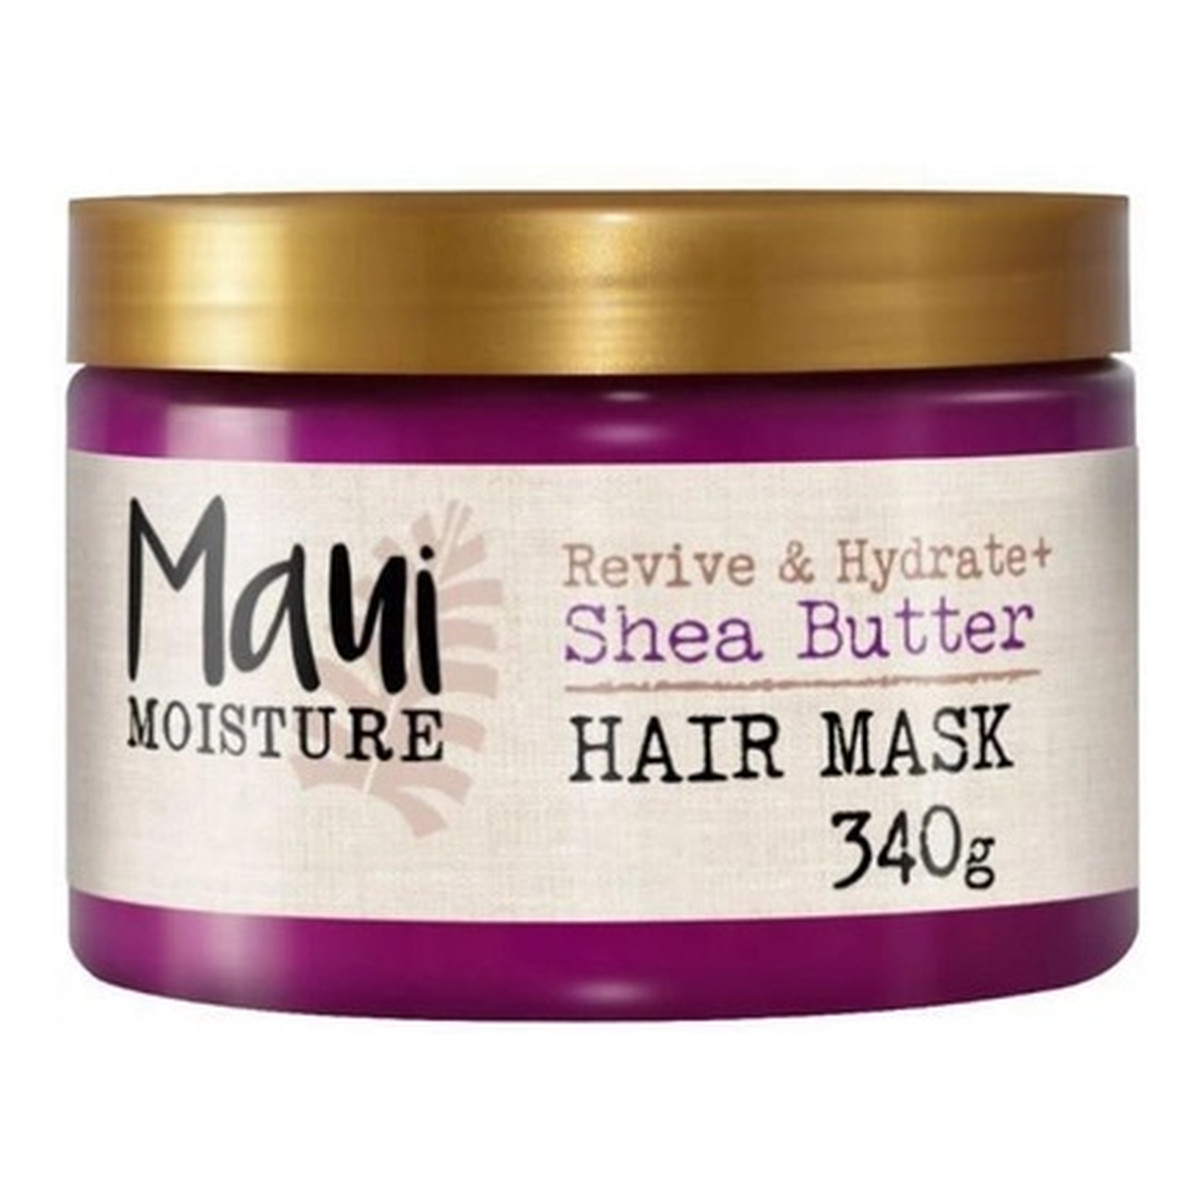 Maui Moisture Revive & hydrate + shea butter mask maska do włosów 340g